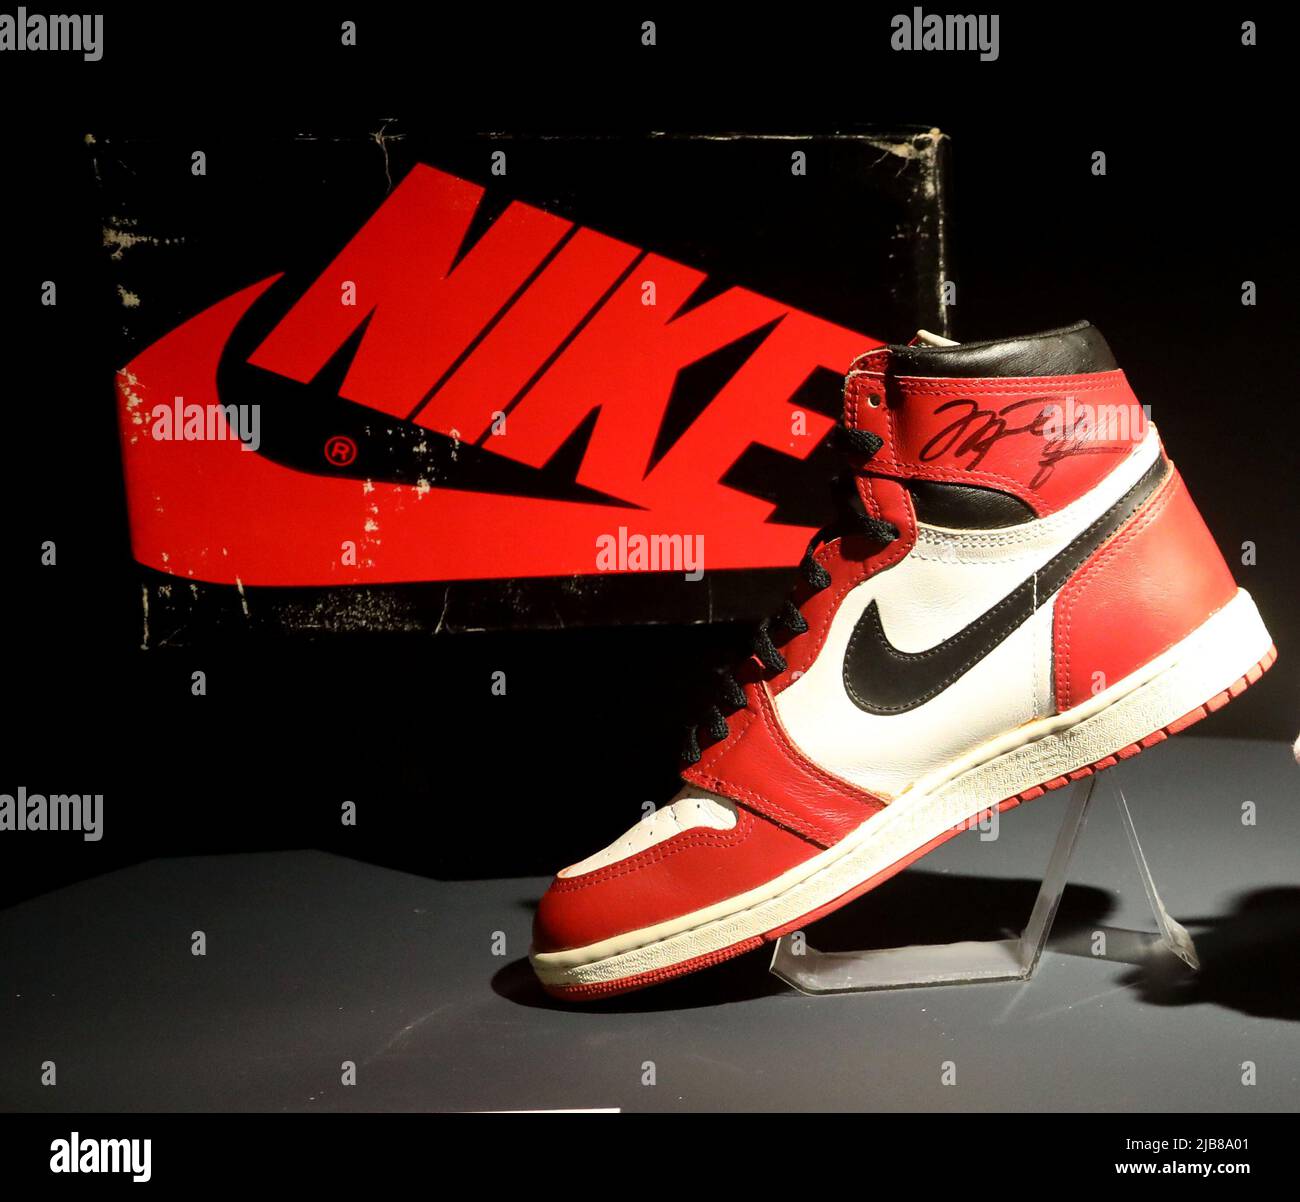 Mc Stan 80,000 Shoes🔥!! Unboxing Air Jordan 11🔥 Most Viral Shoes 🔥 